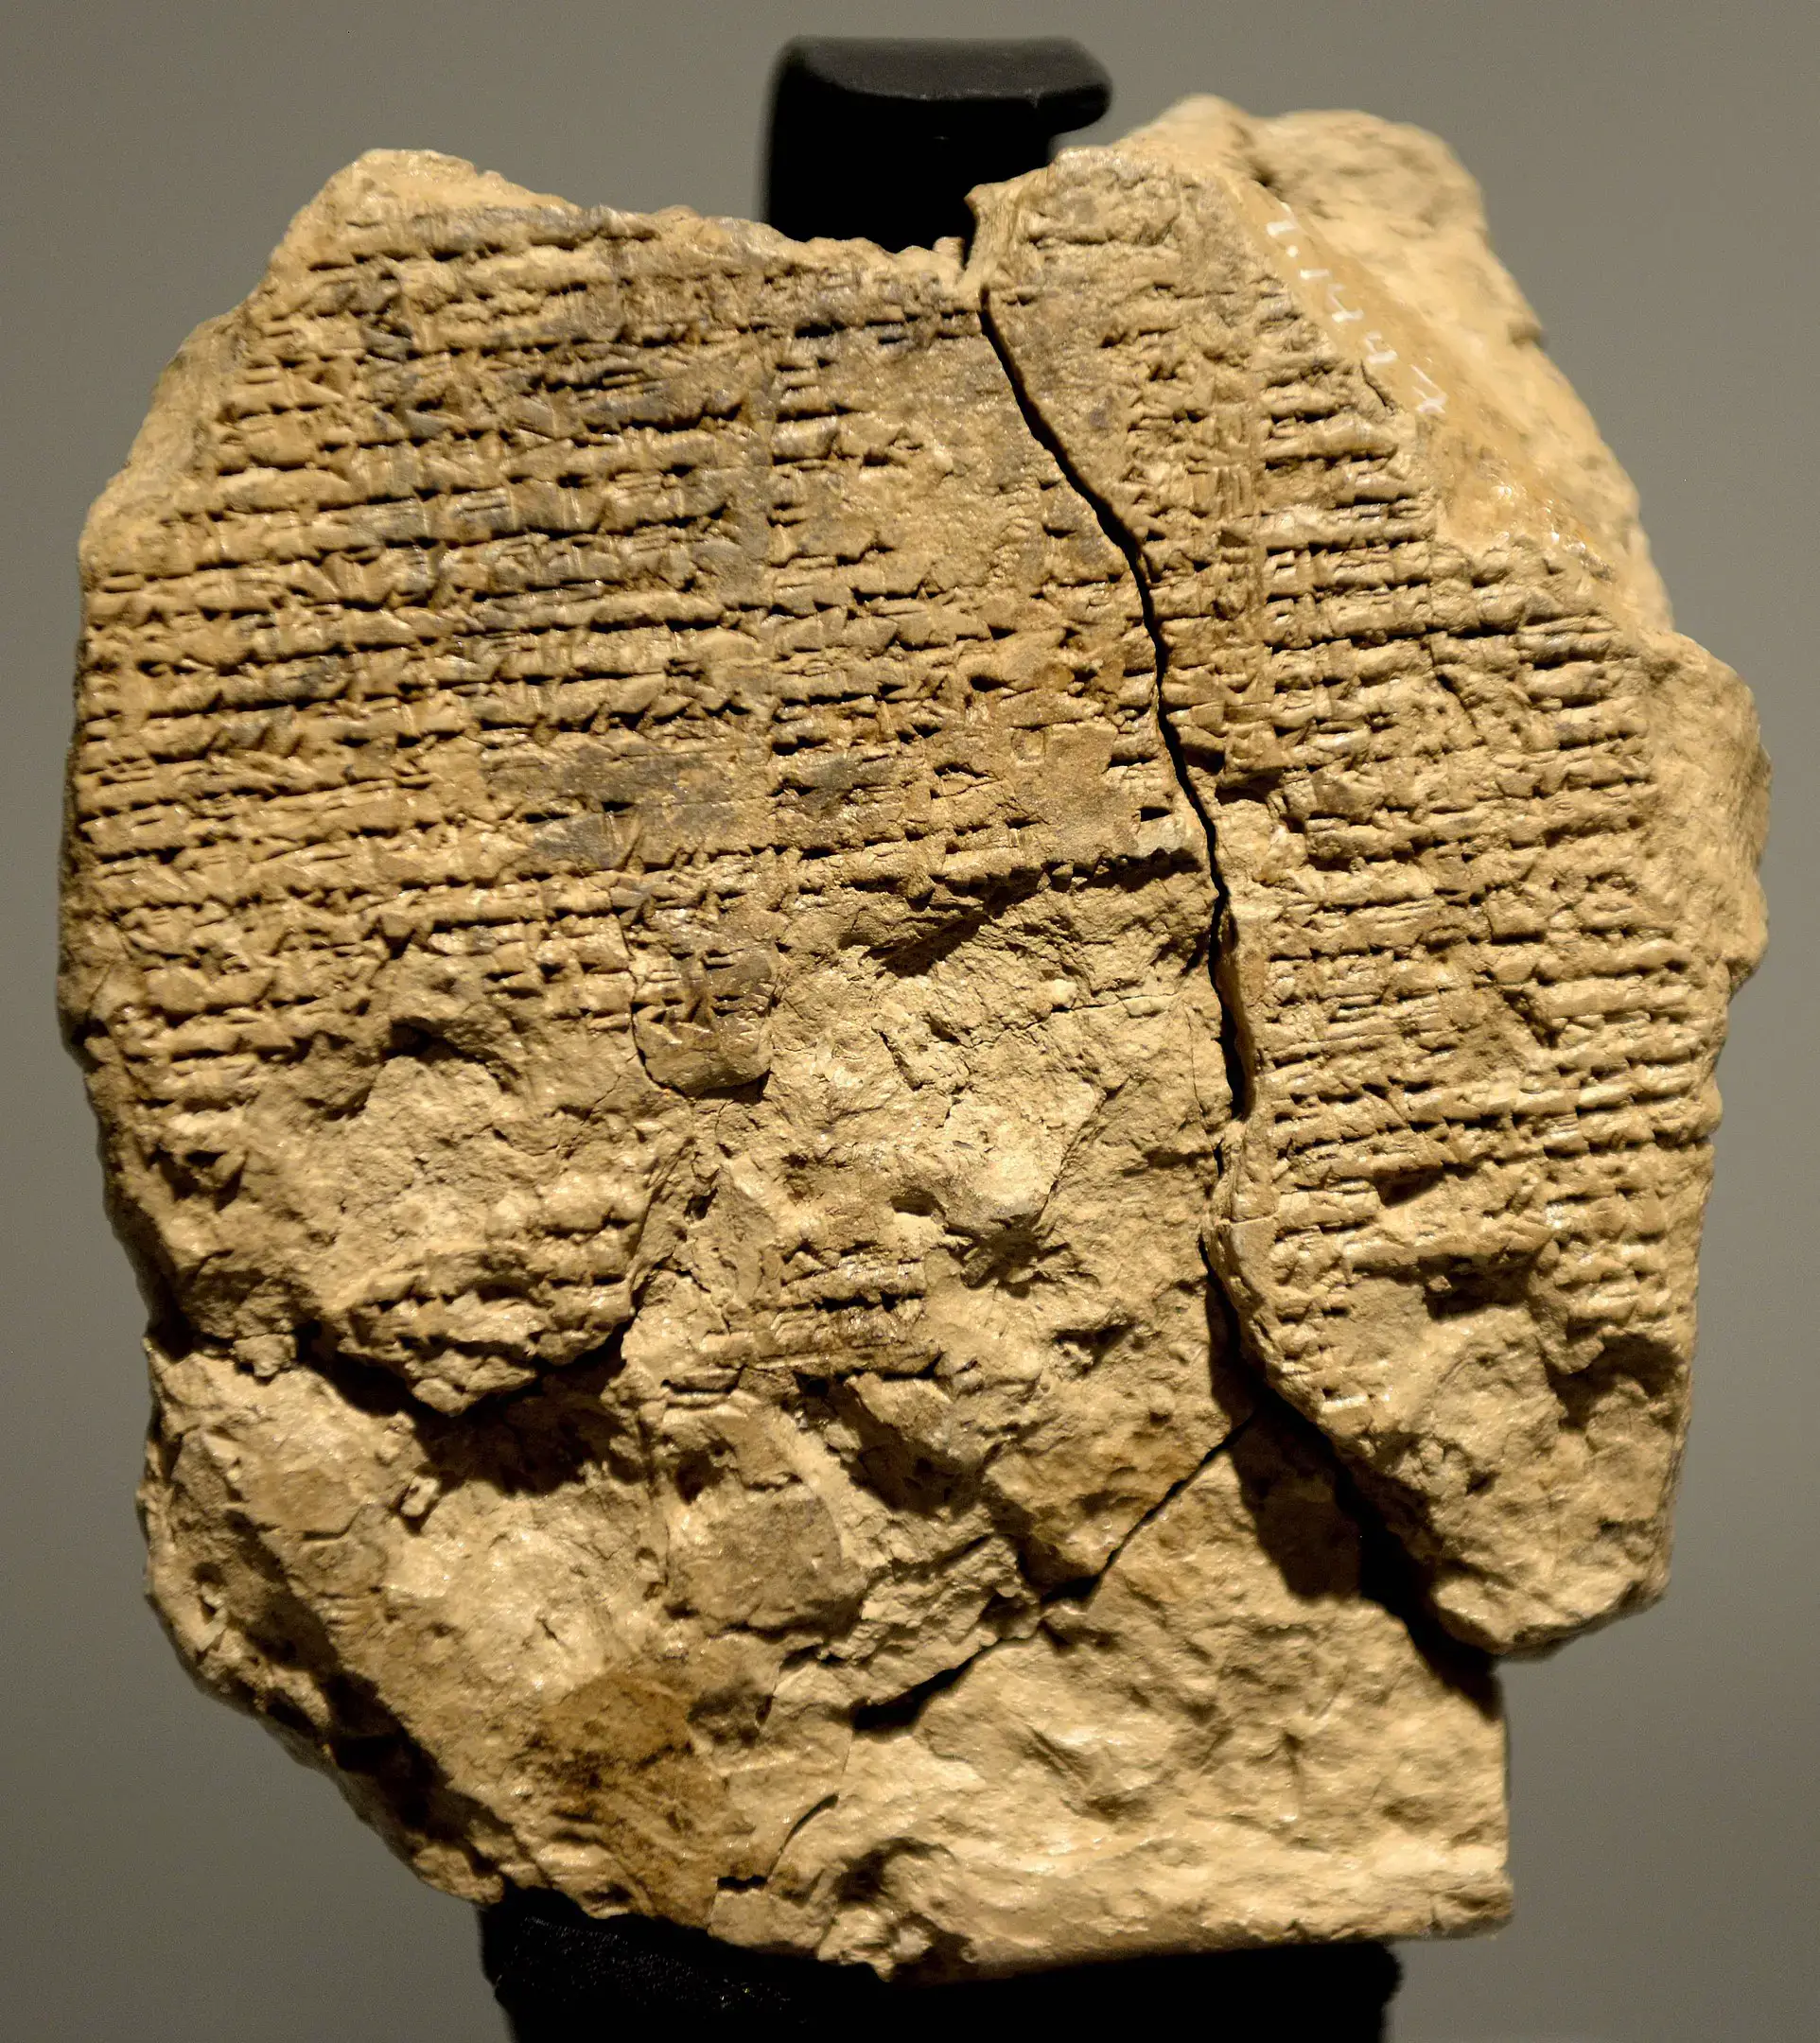 La Epopeya de Gilgamesh, la obra literaria más antigua conocida